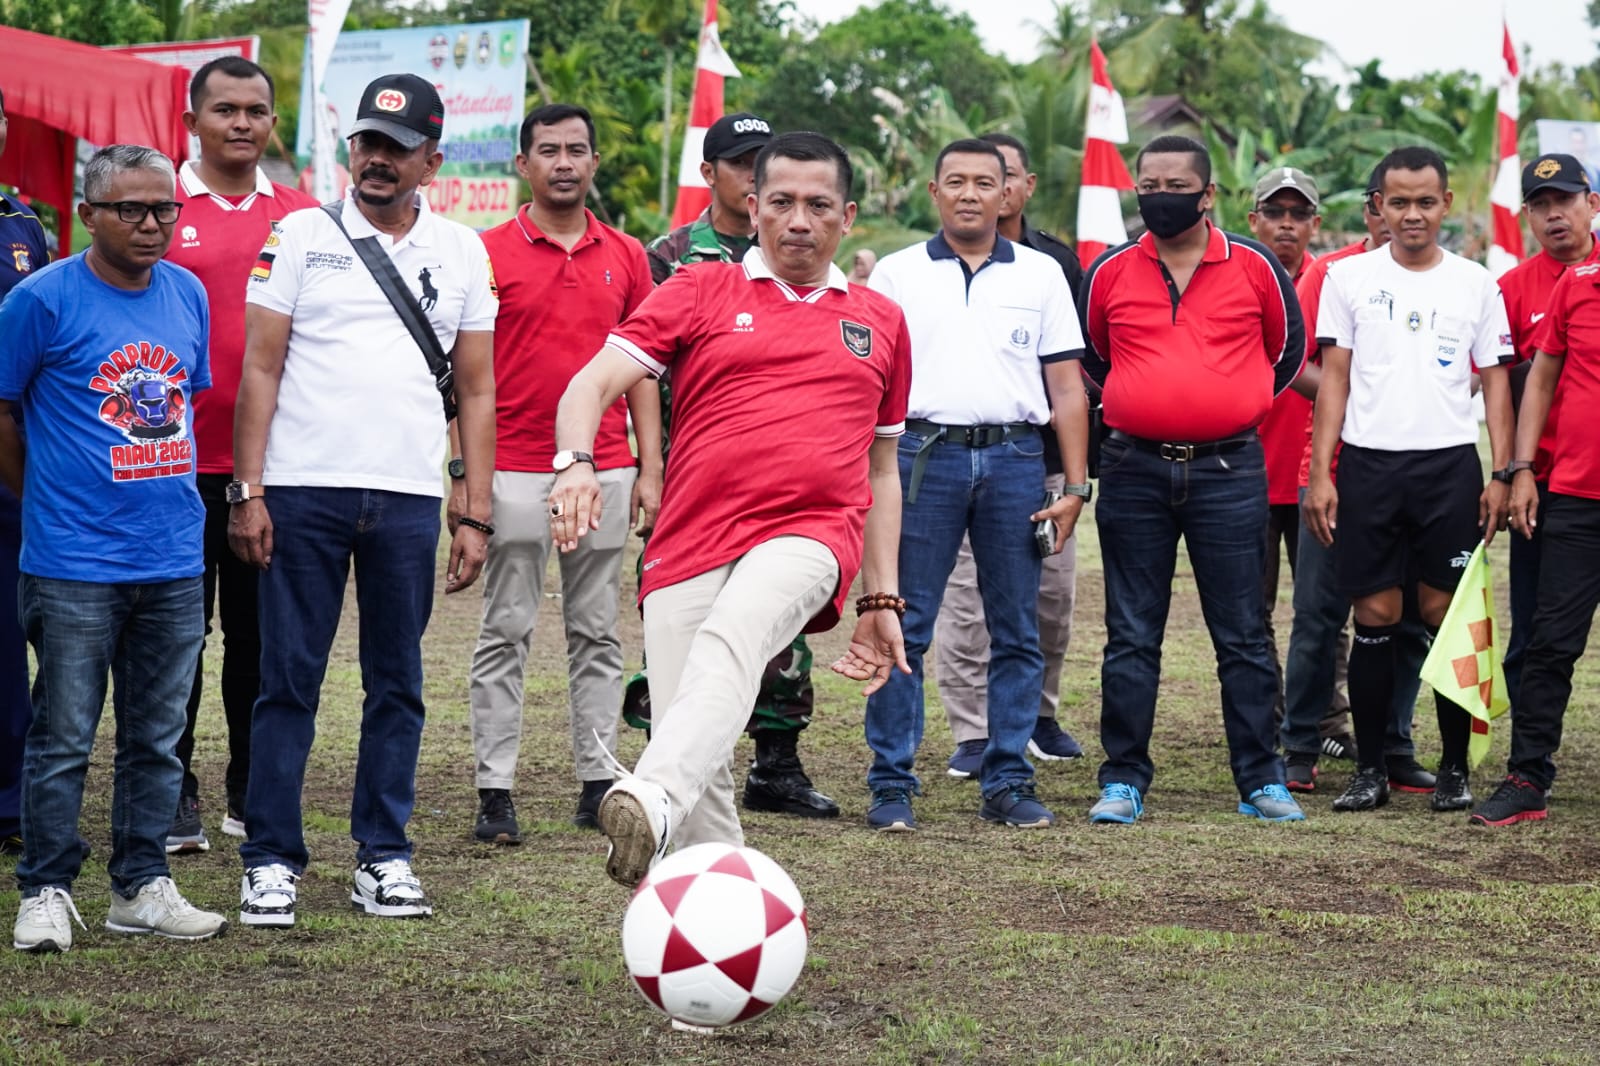 HM Adil Buka Secara Resmi, Turnamen Sepak Bola Bupati Cup di Stadion Purnama Meranti